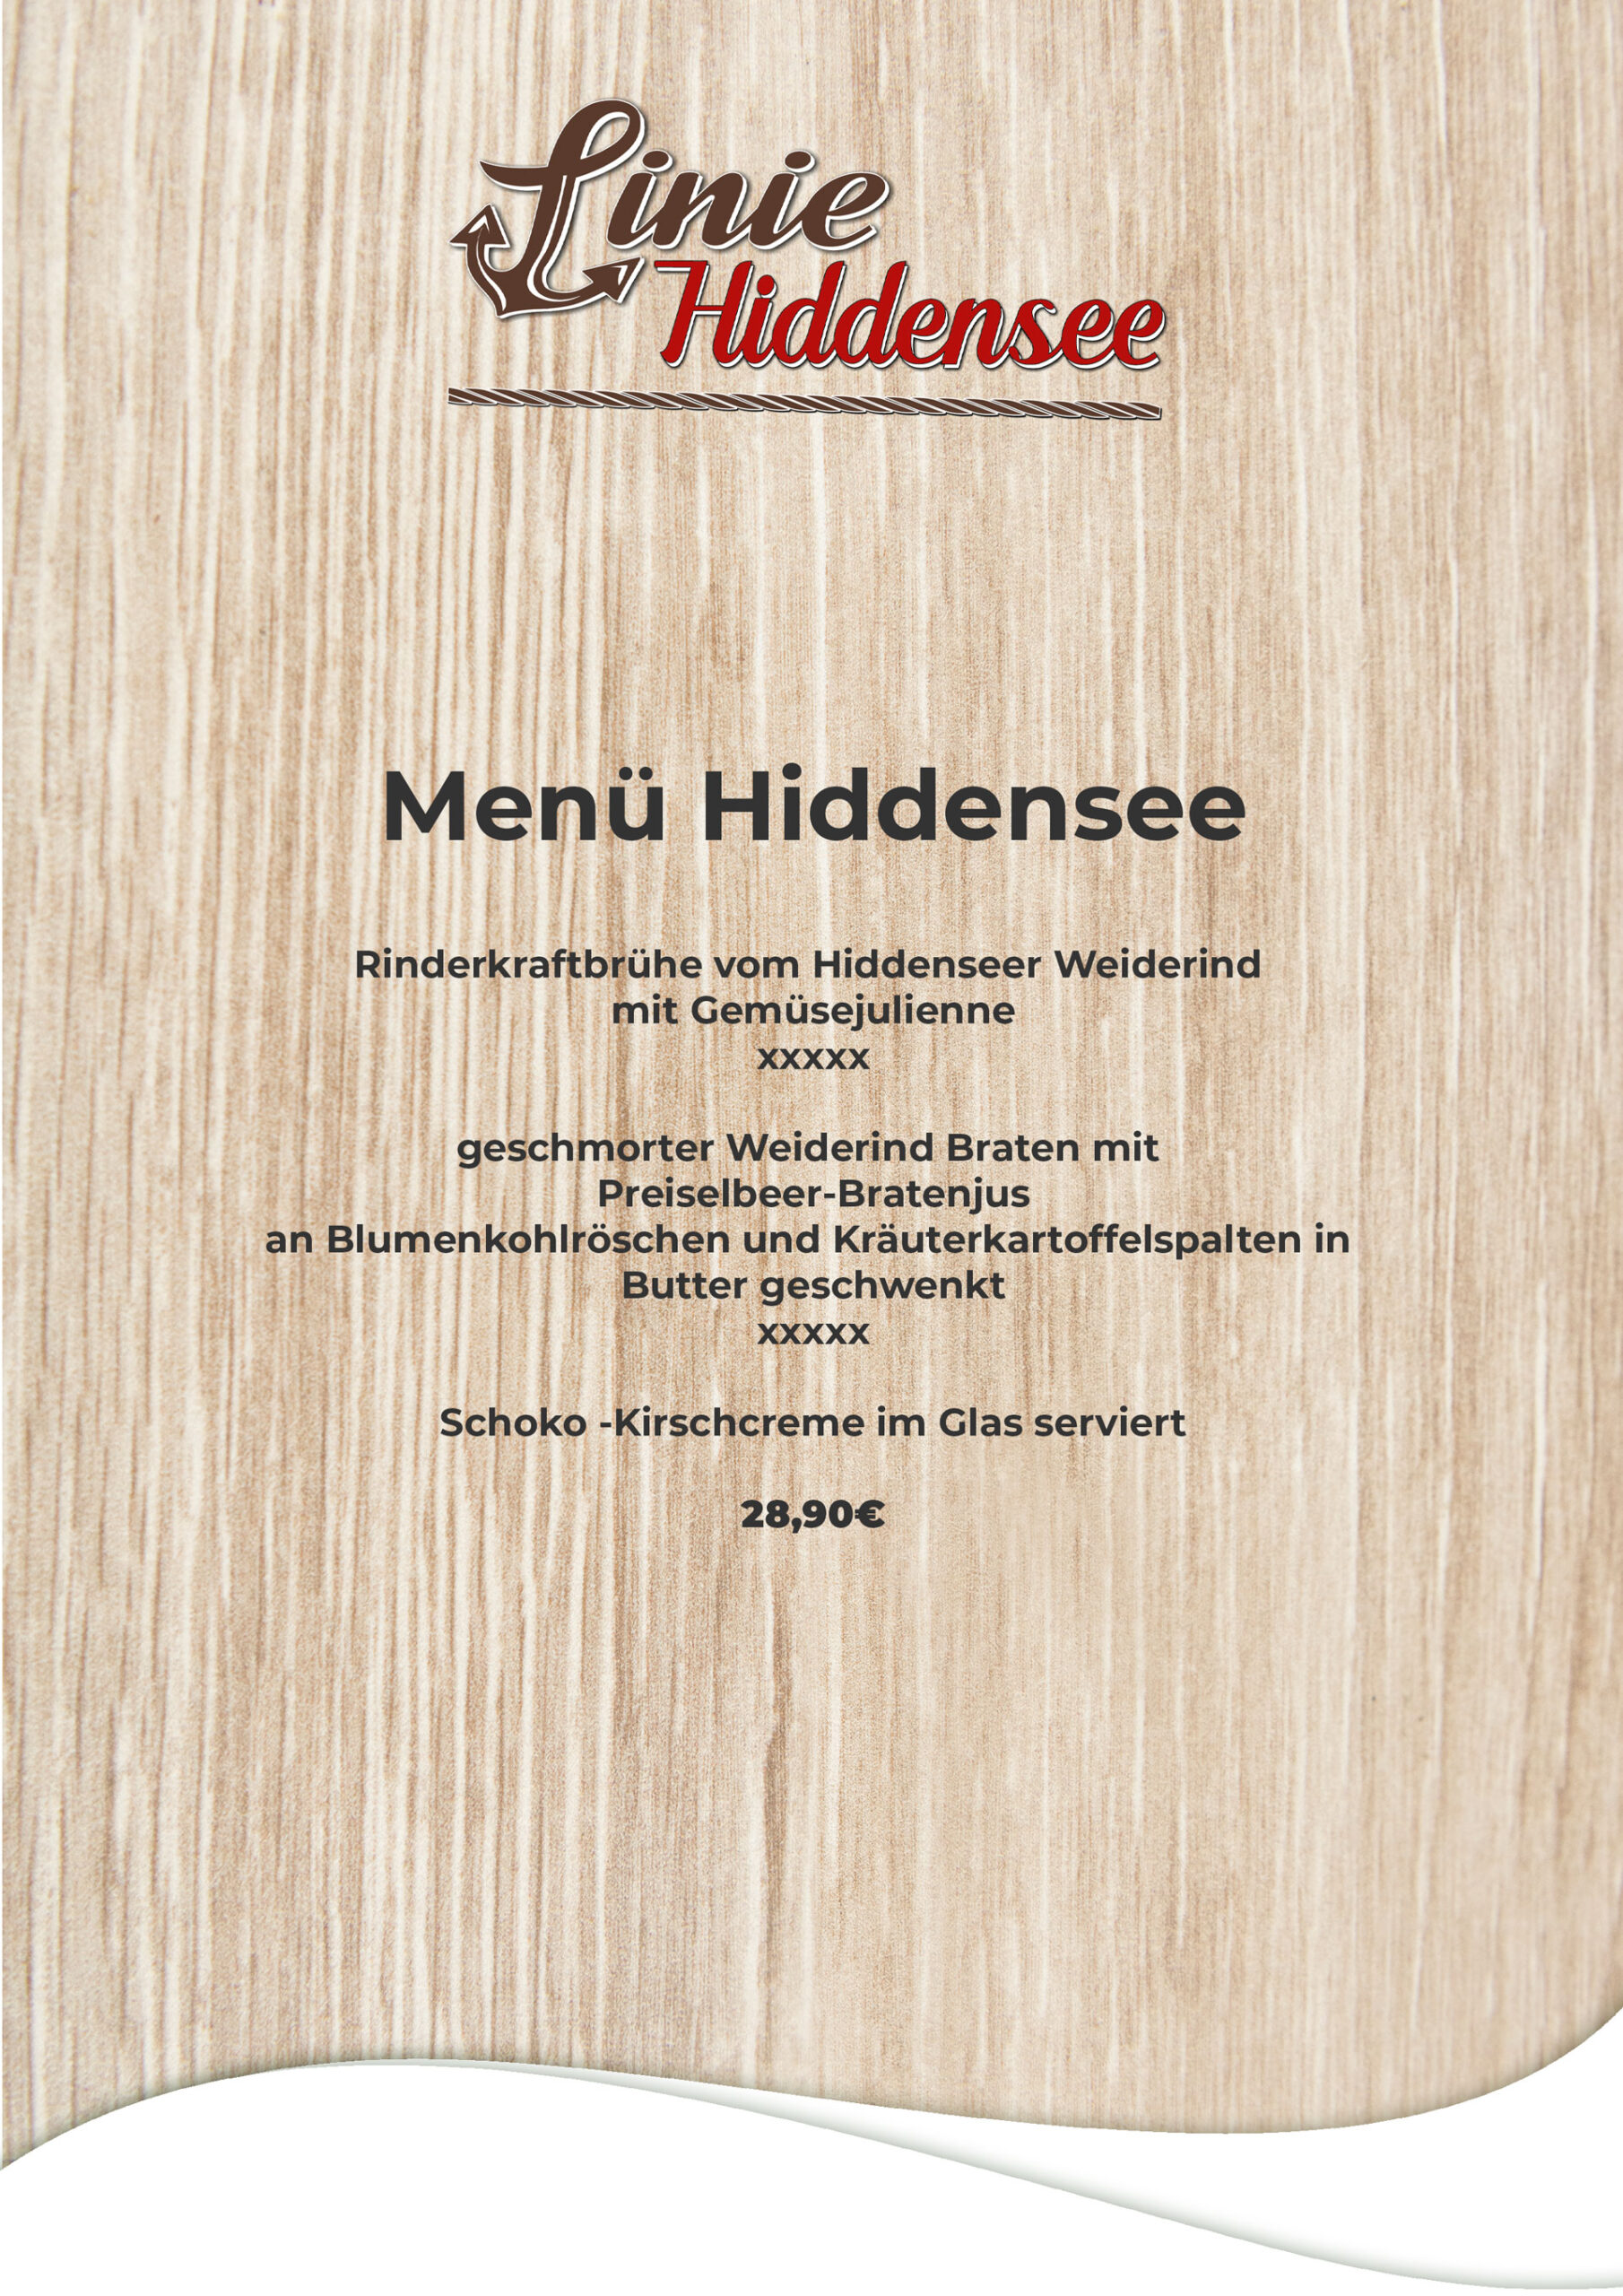 menue-hiddensee